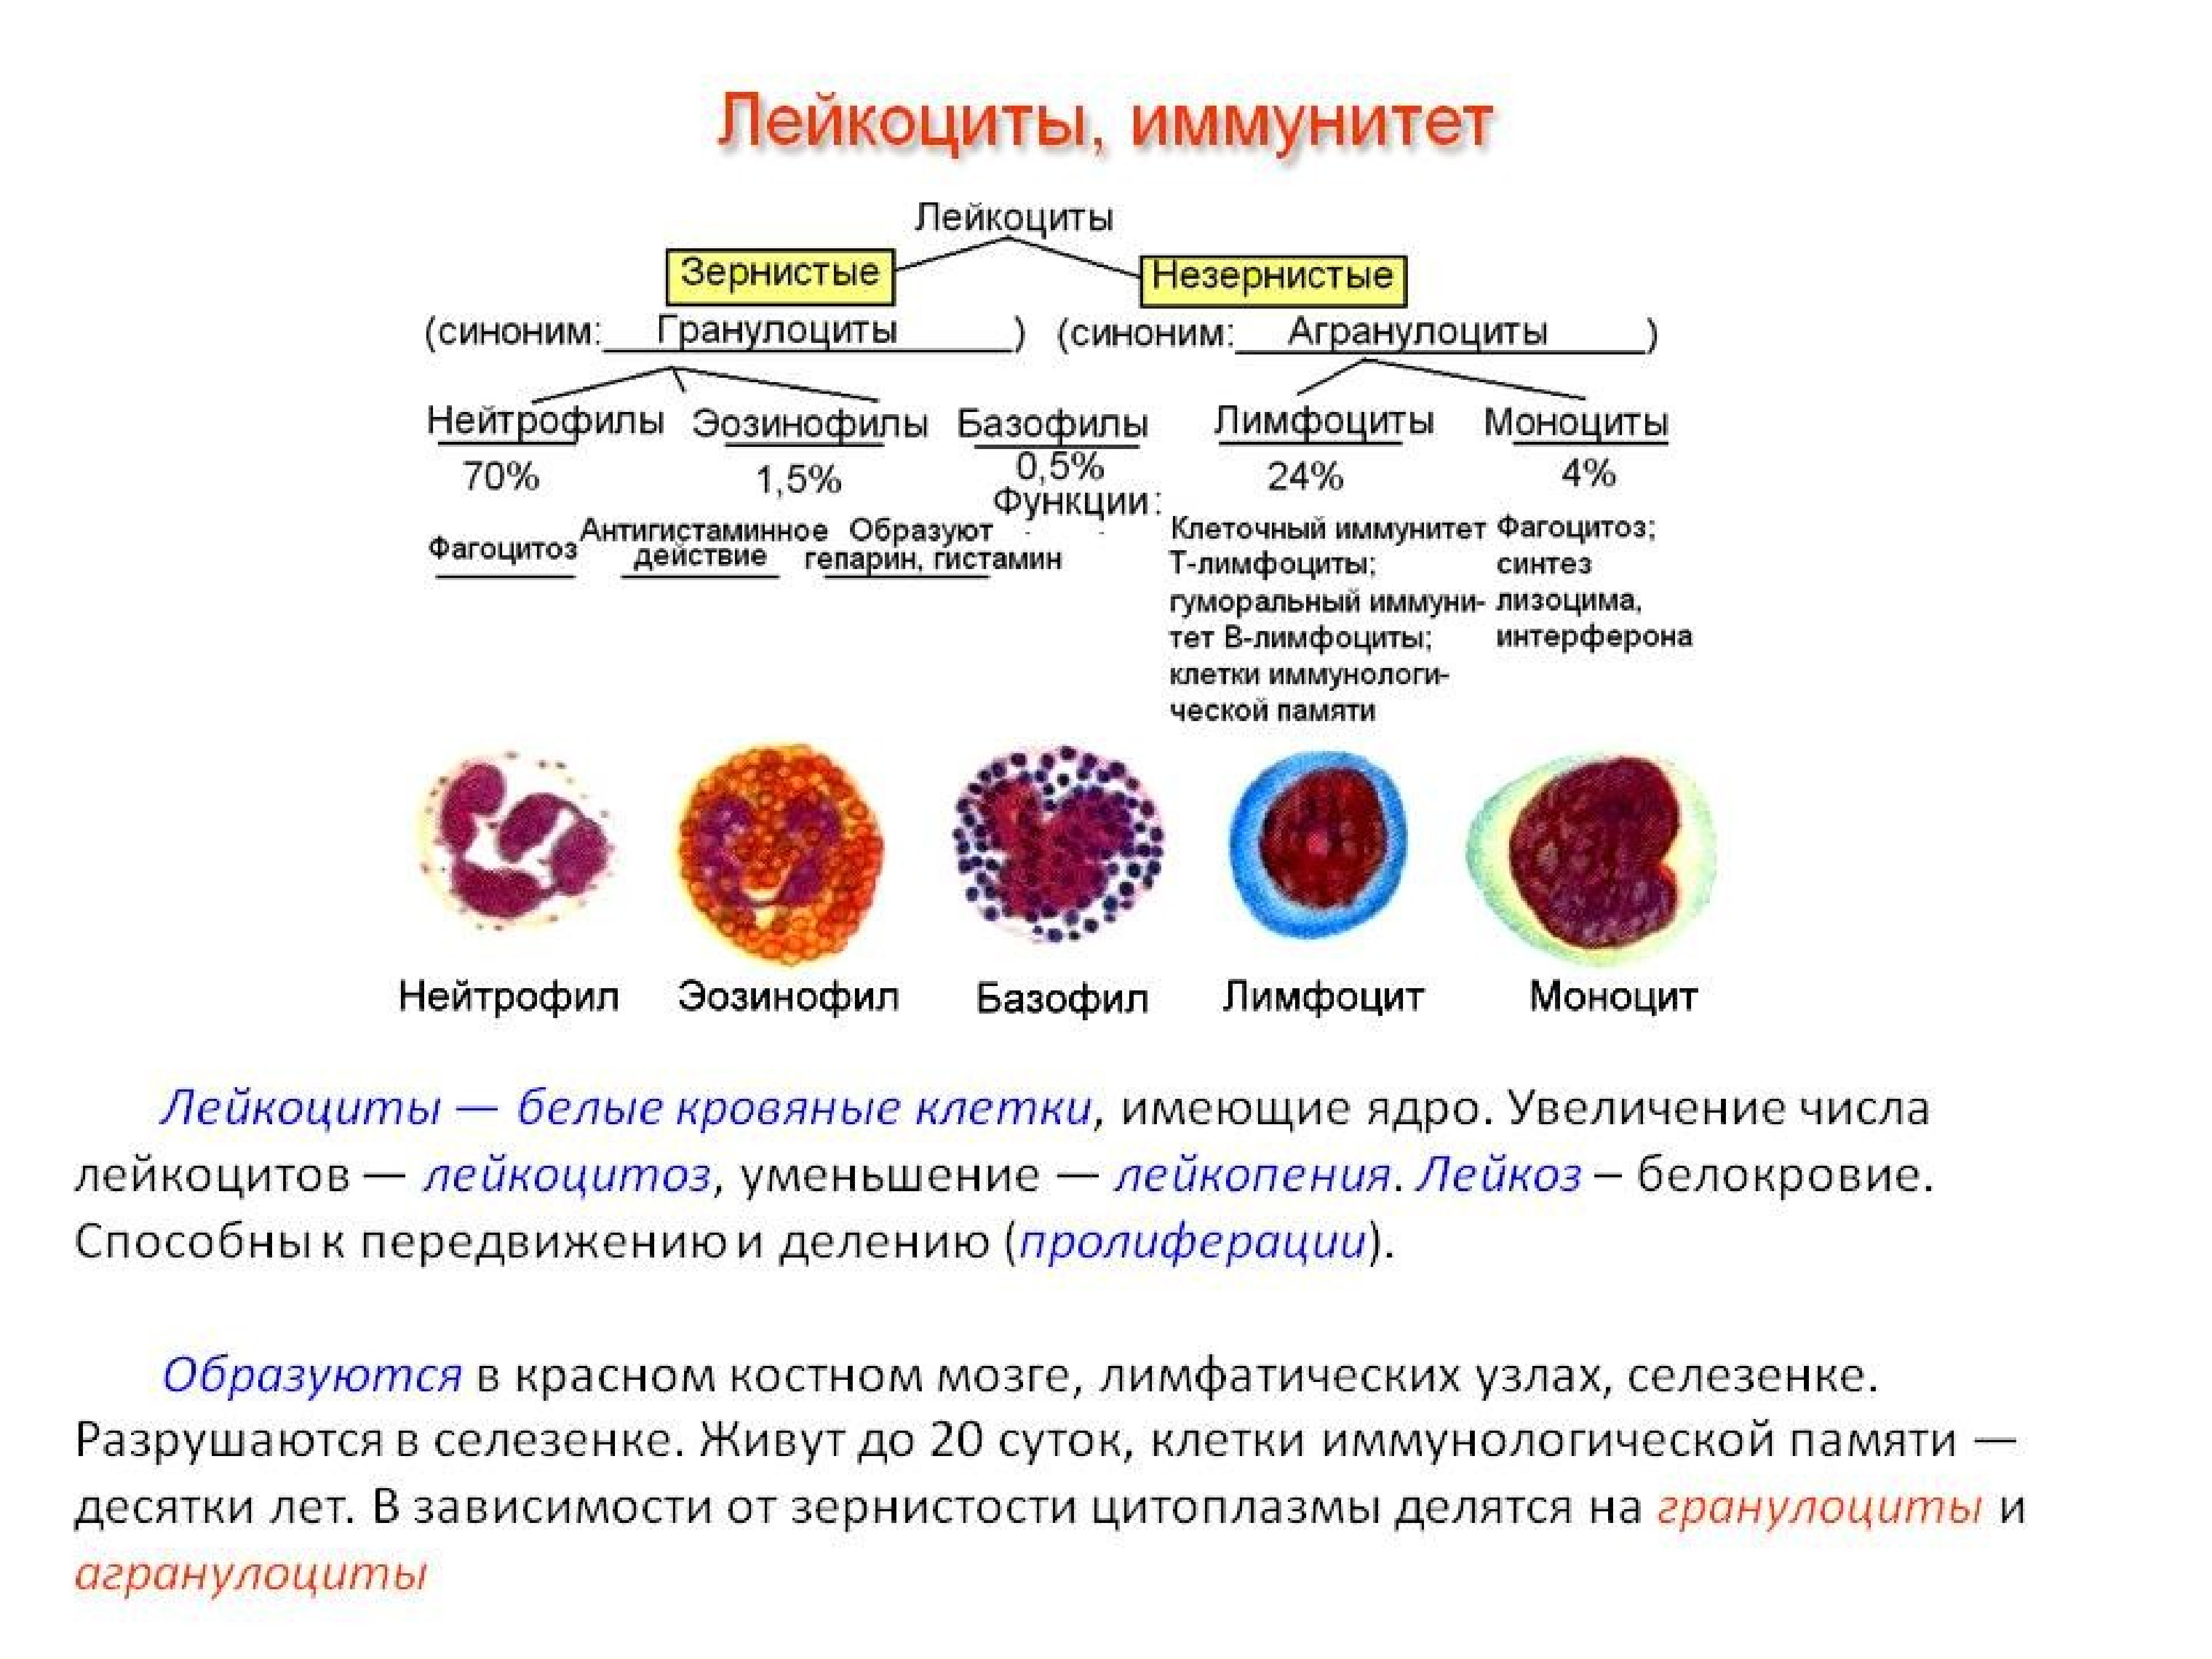 Как обозначаются лимфоциты в крови